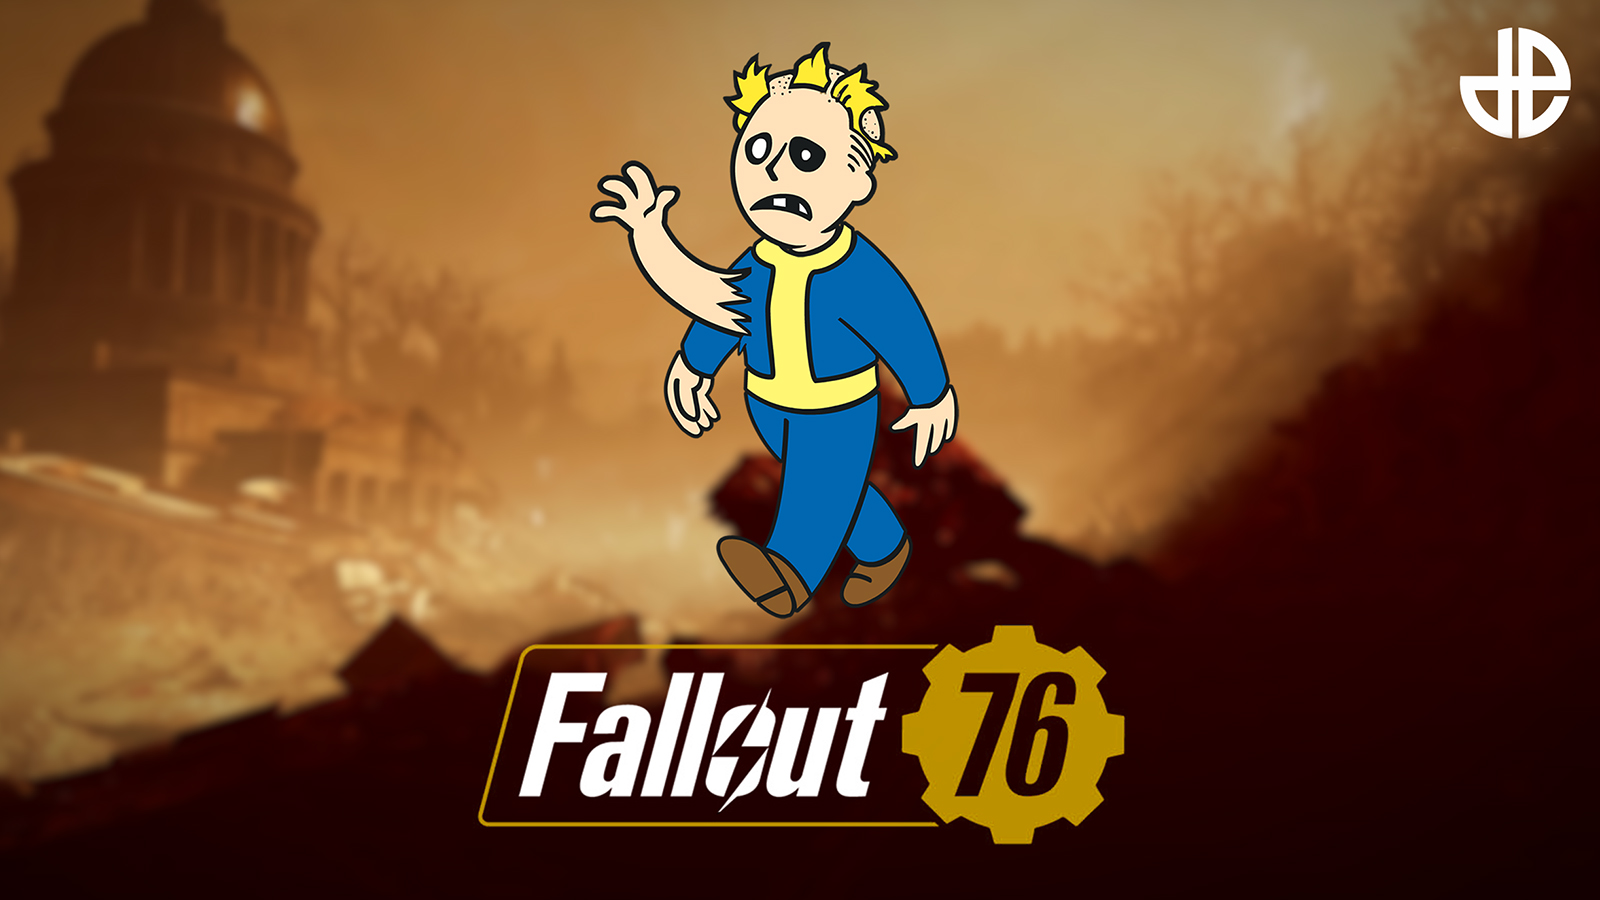 Зображення з логотипом Fallout 76 та піктограмою мутації